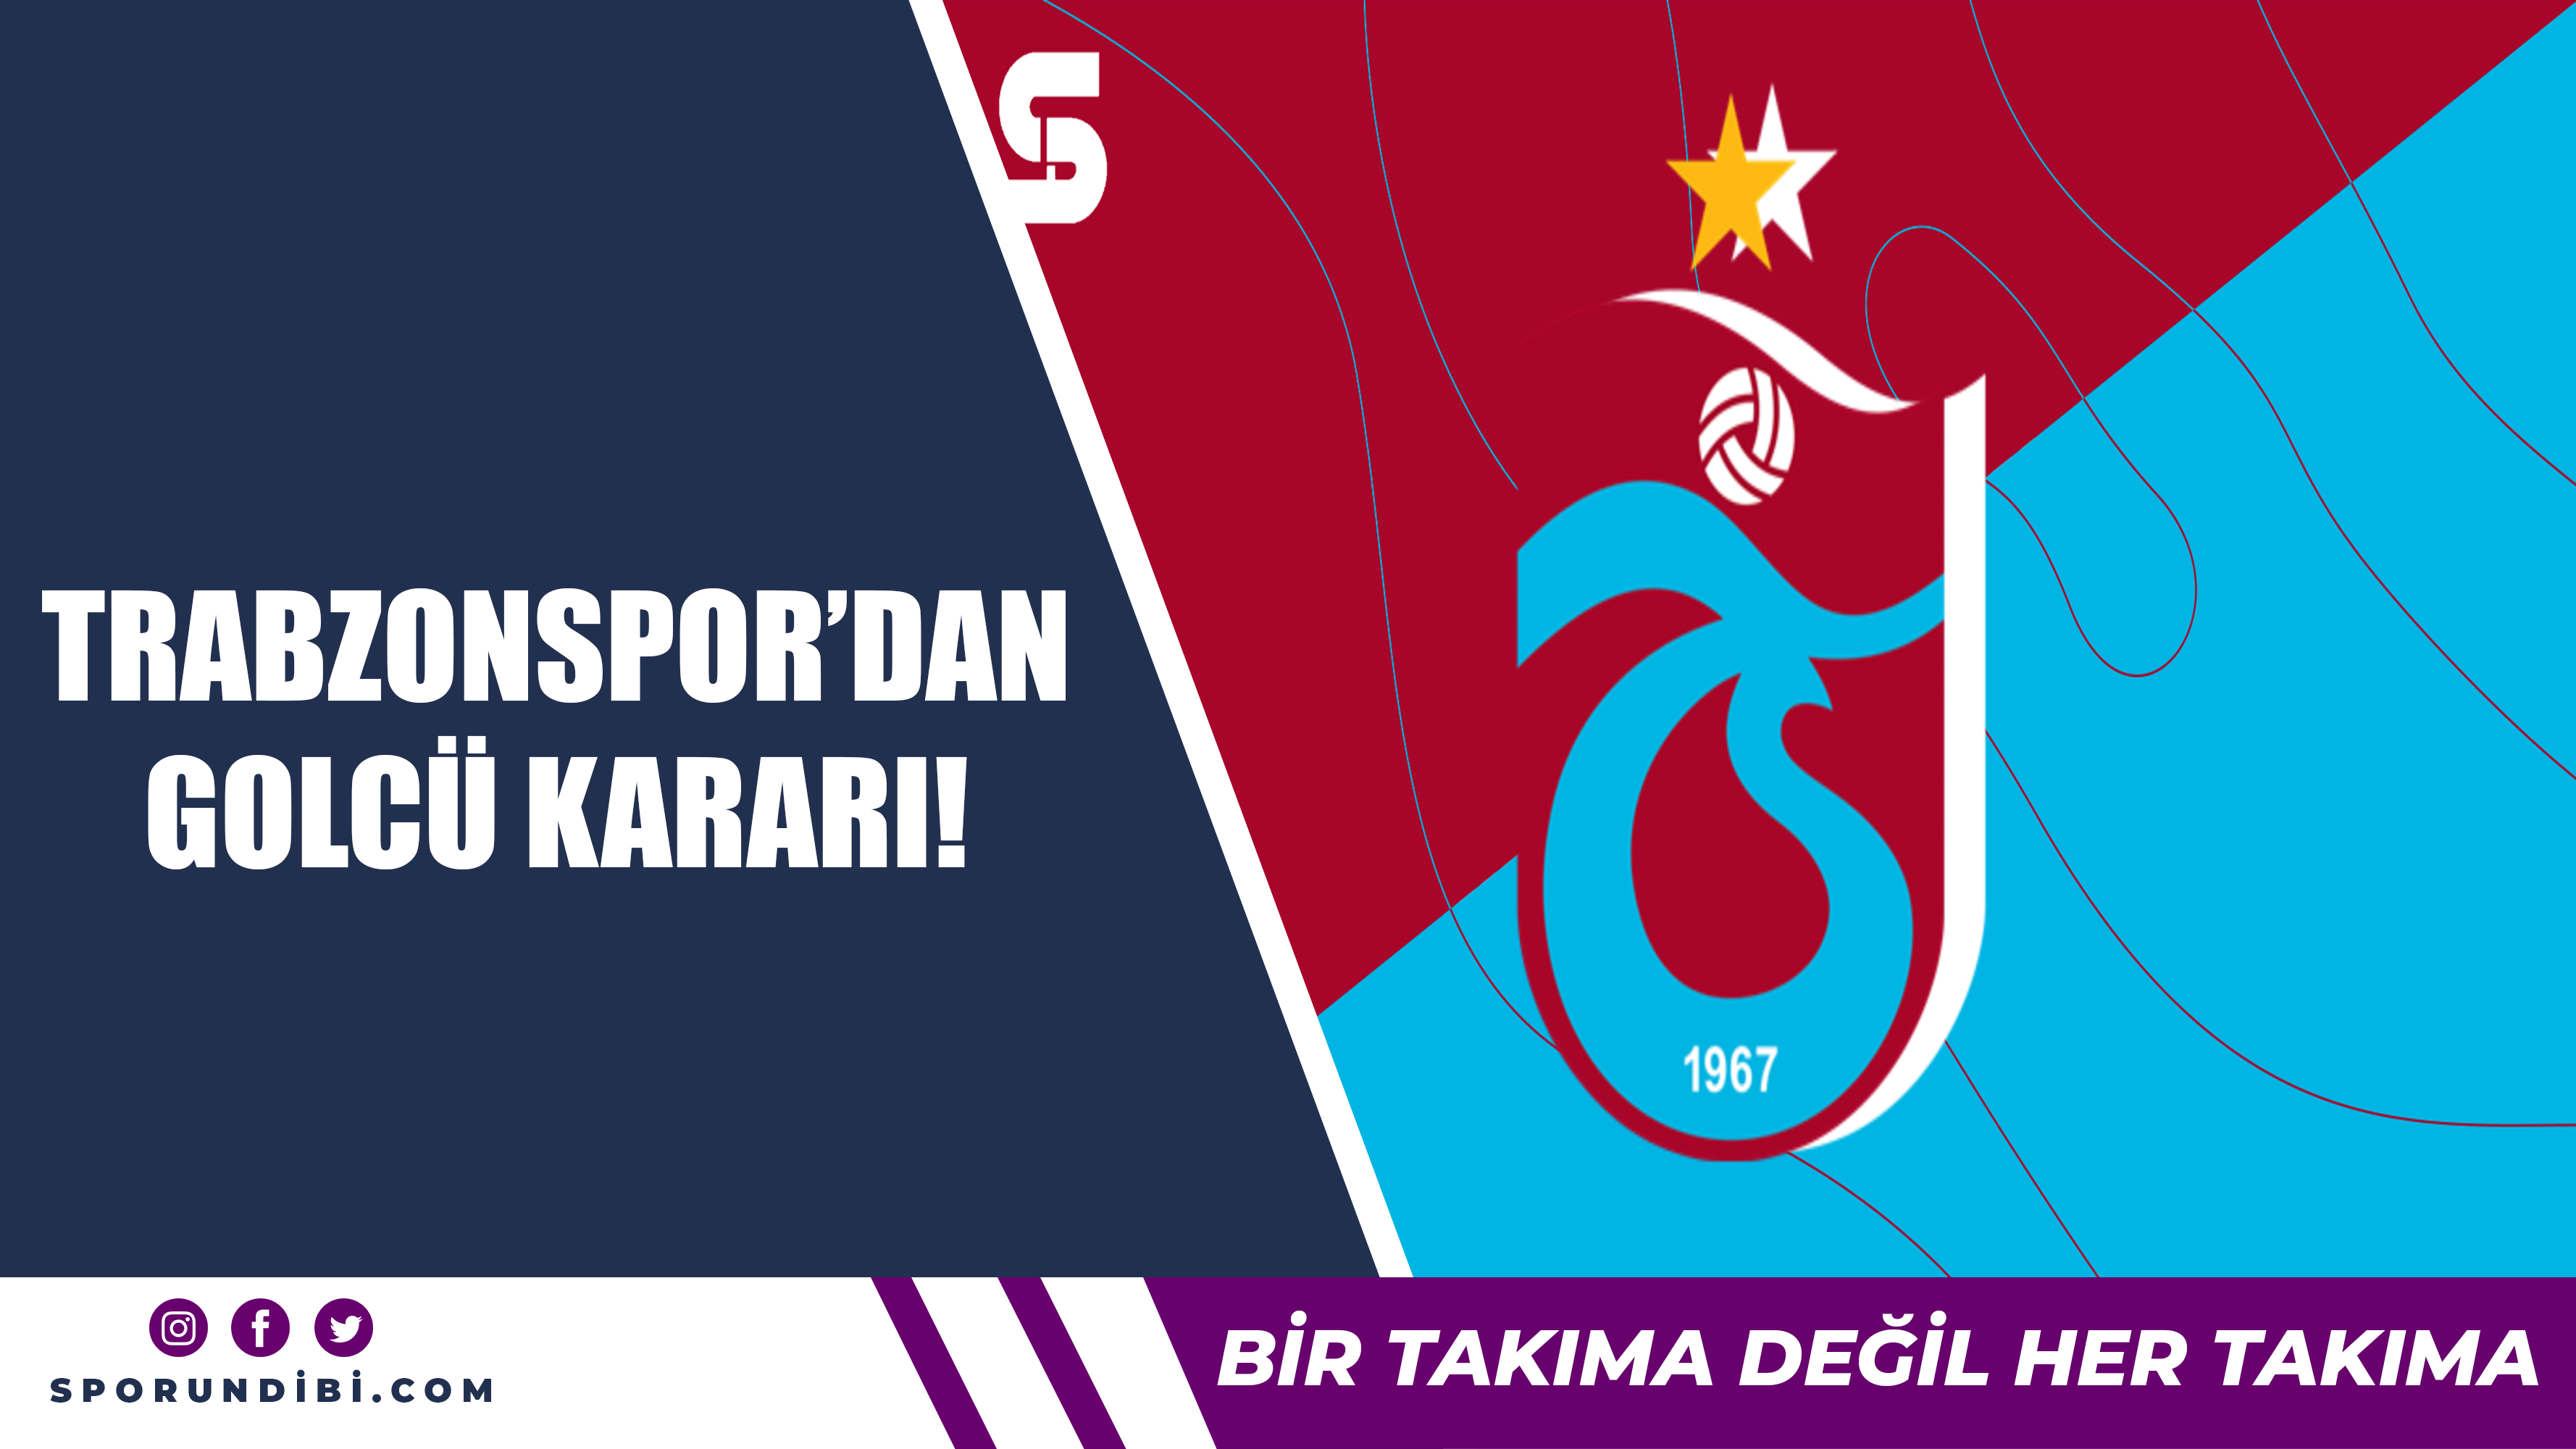 Trabzonspor'dan golcü kararı!